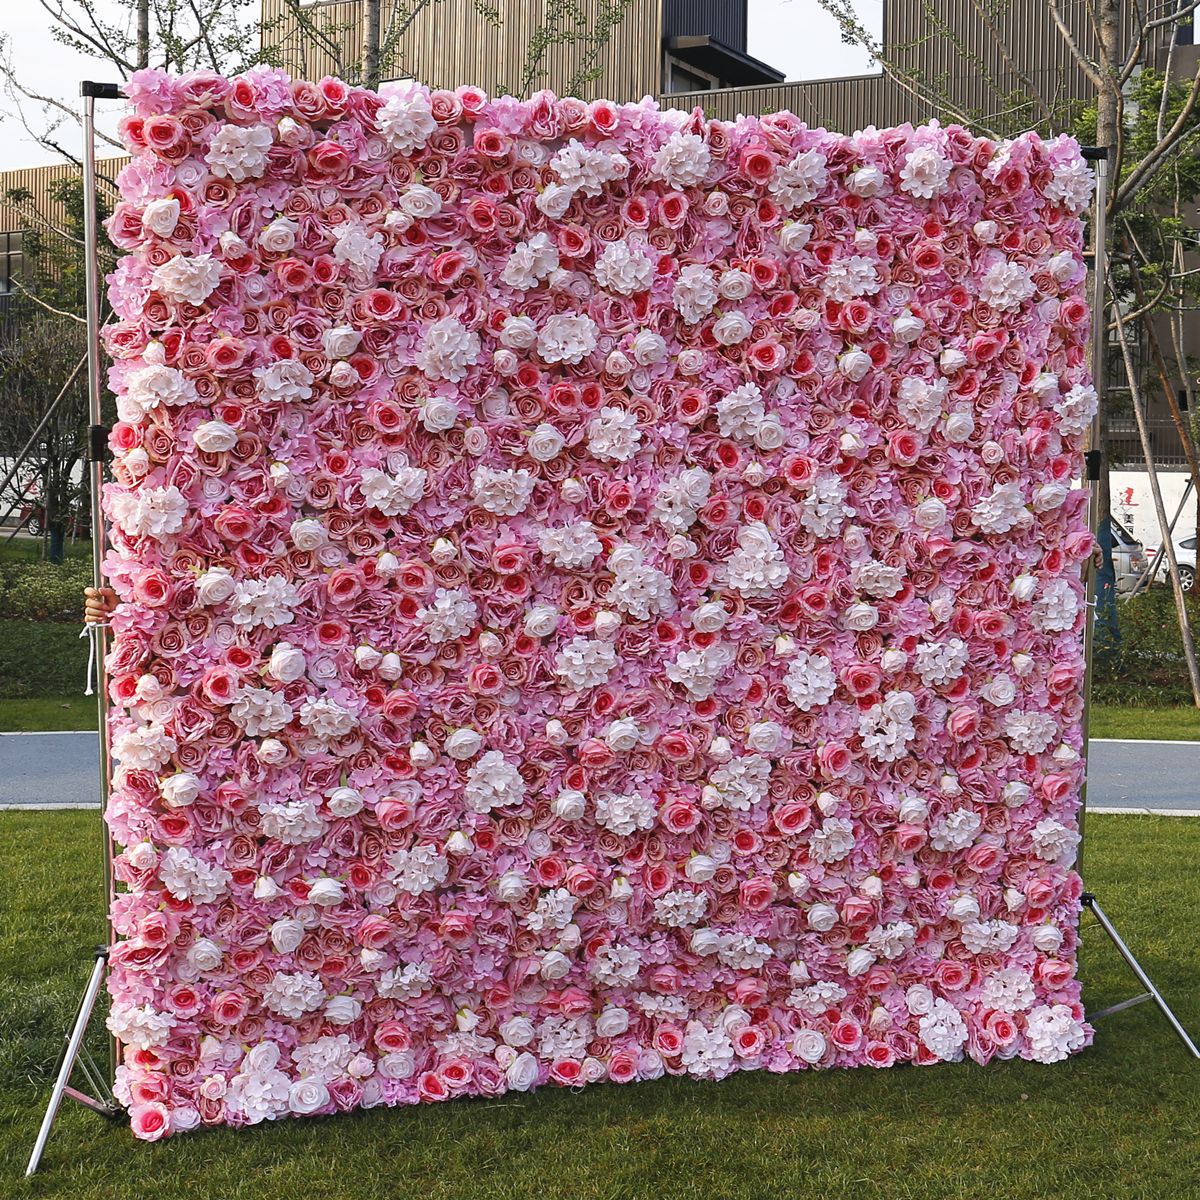  Hochzeit Stoffboden Simulation Blumenwand Hintergrund Wand Film Studio Hintergrund Seidenblumenreihe Pflanzenwand Blumenwand 